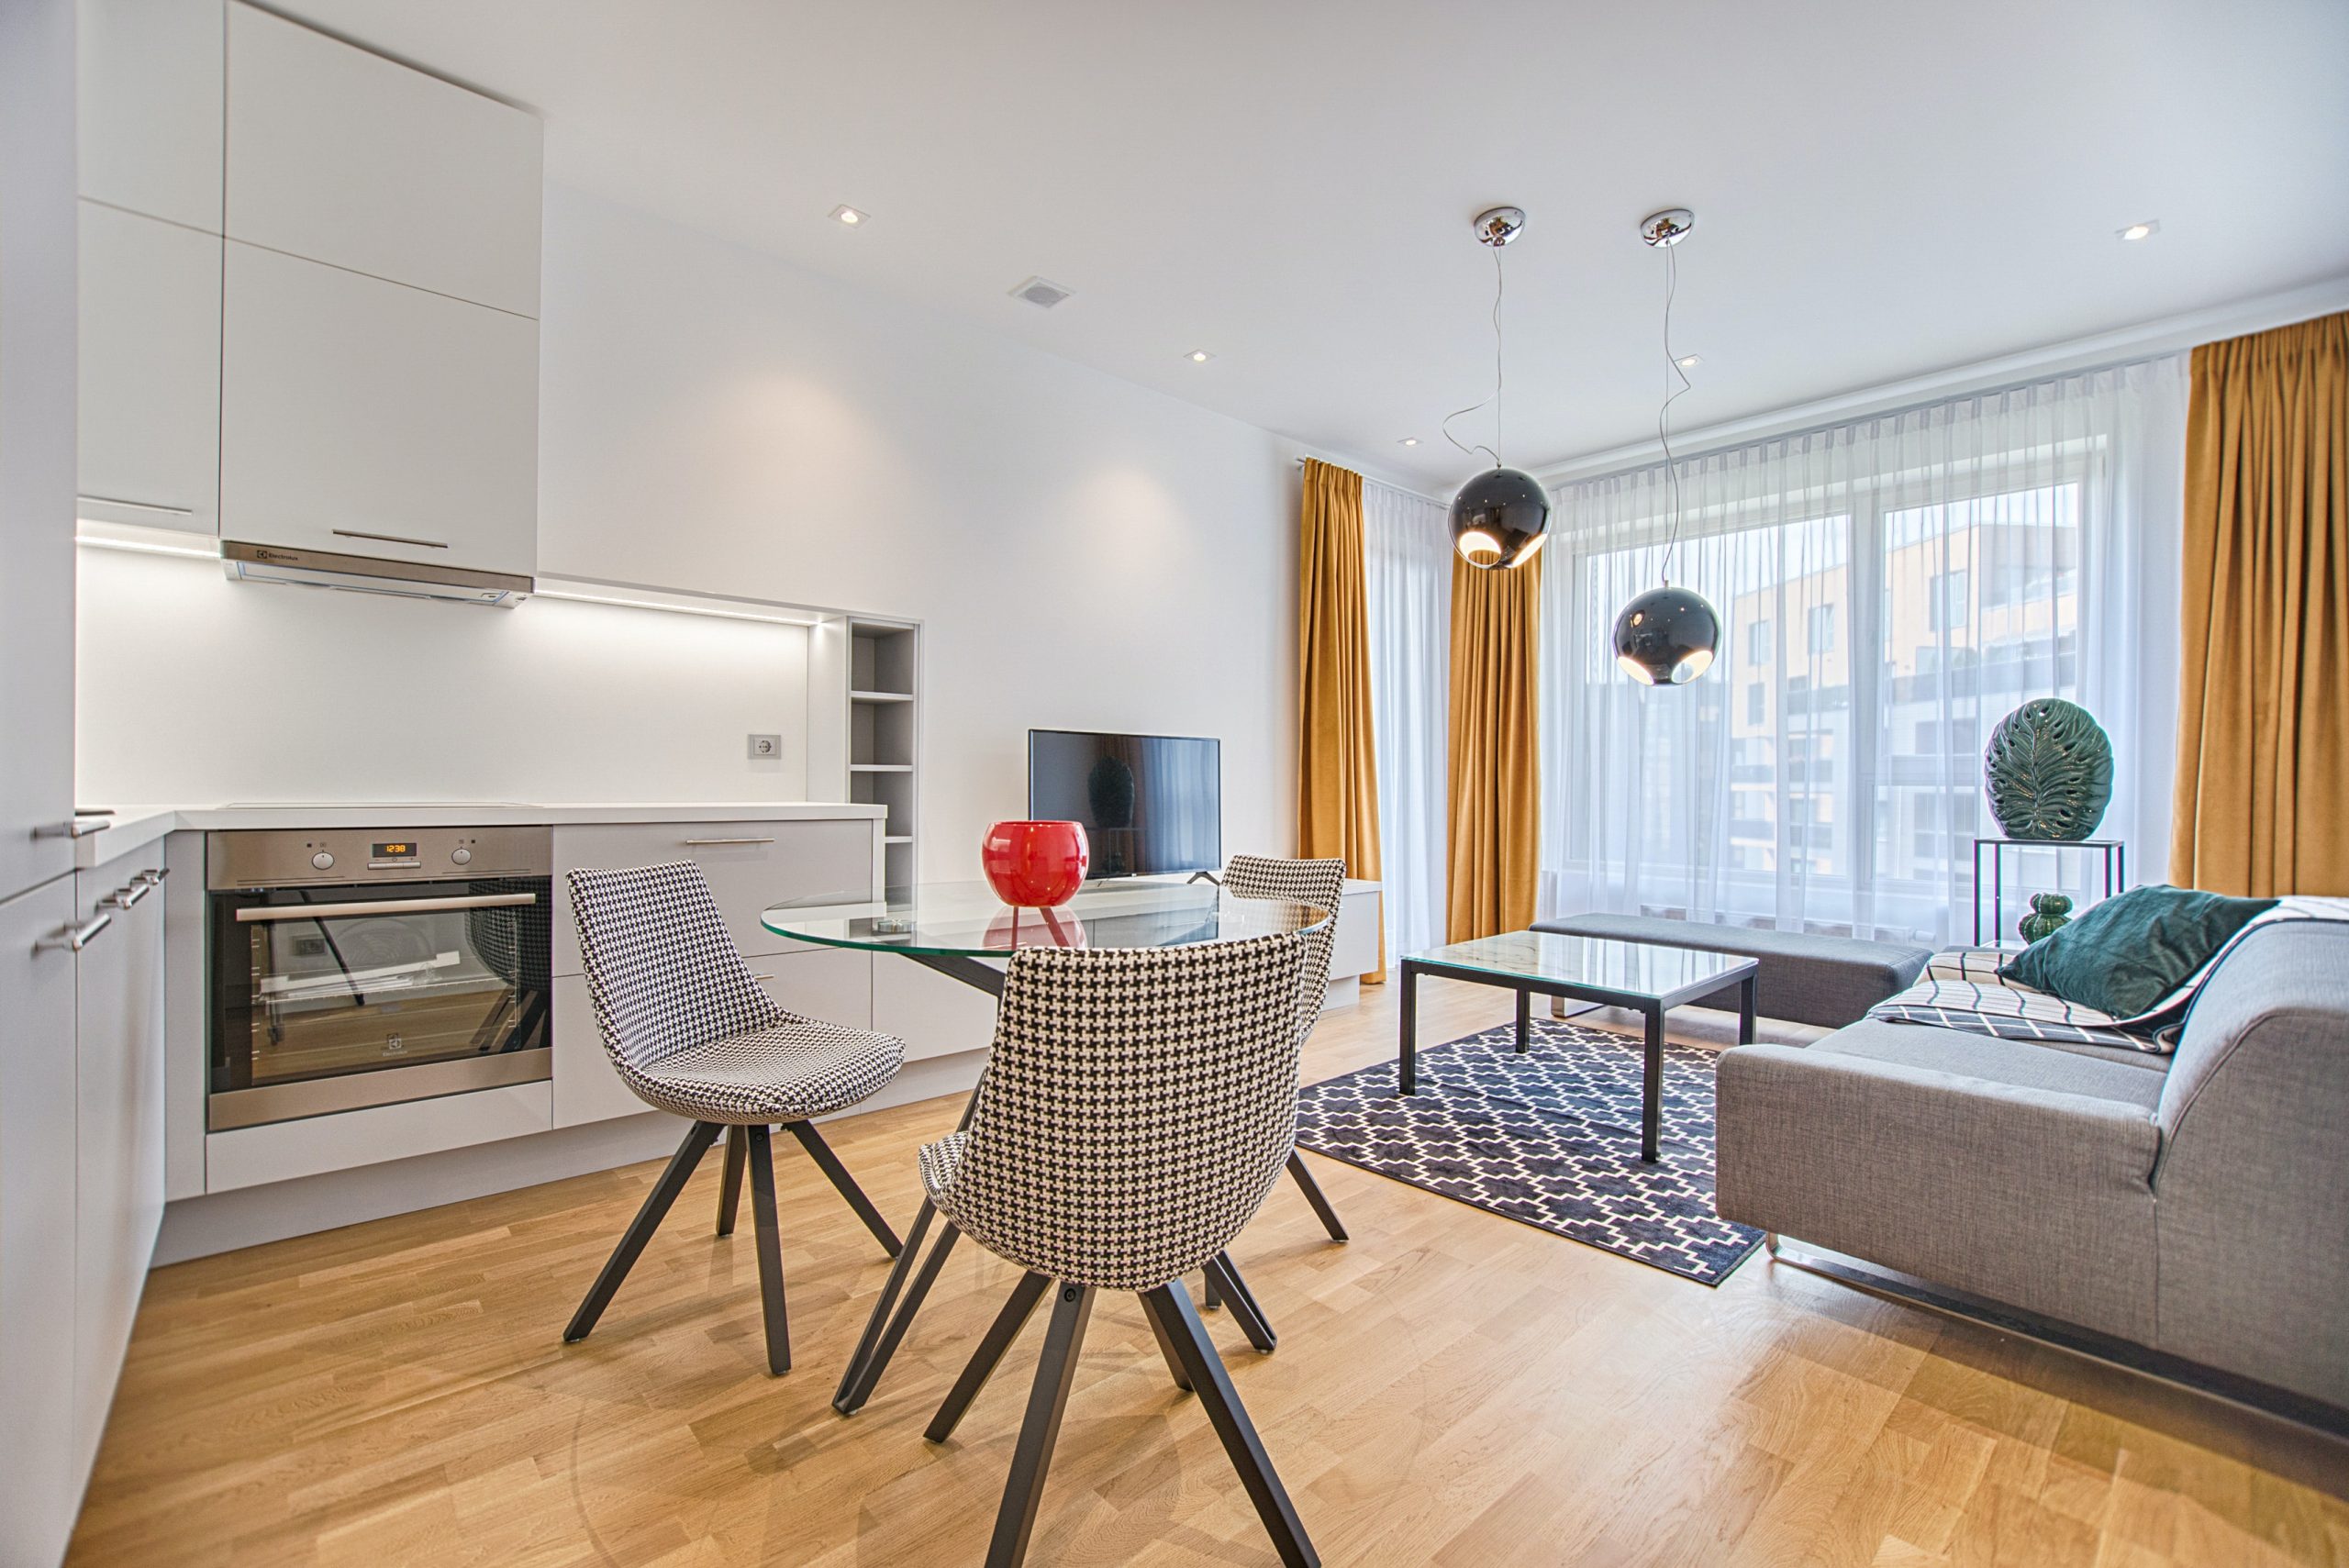 krásna a modenrá kuchňa spojená s obývacou miestnosťou